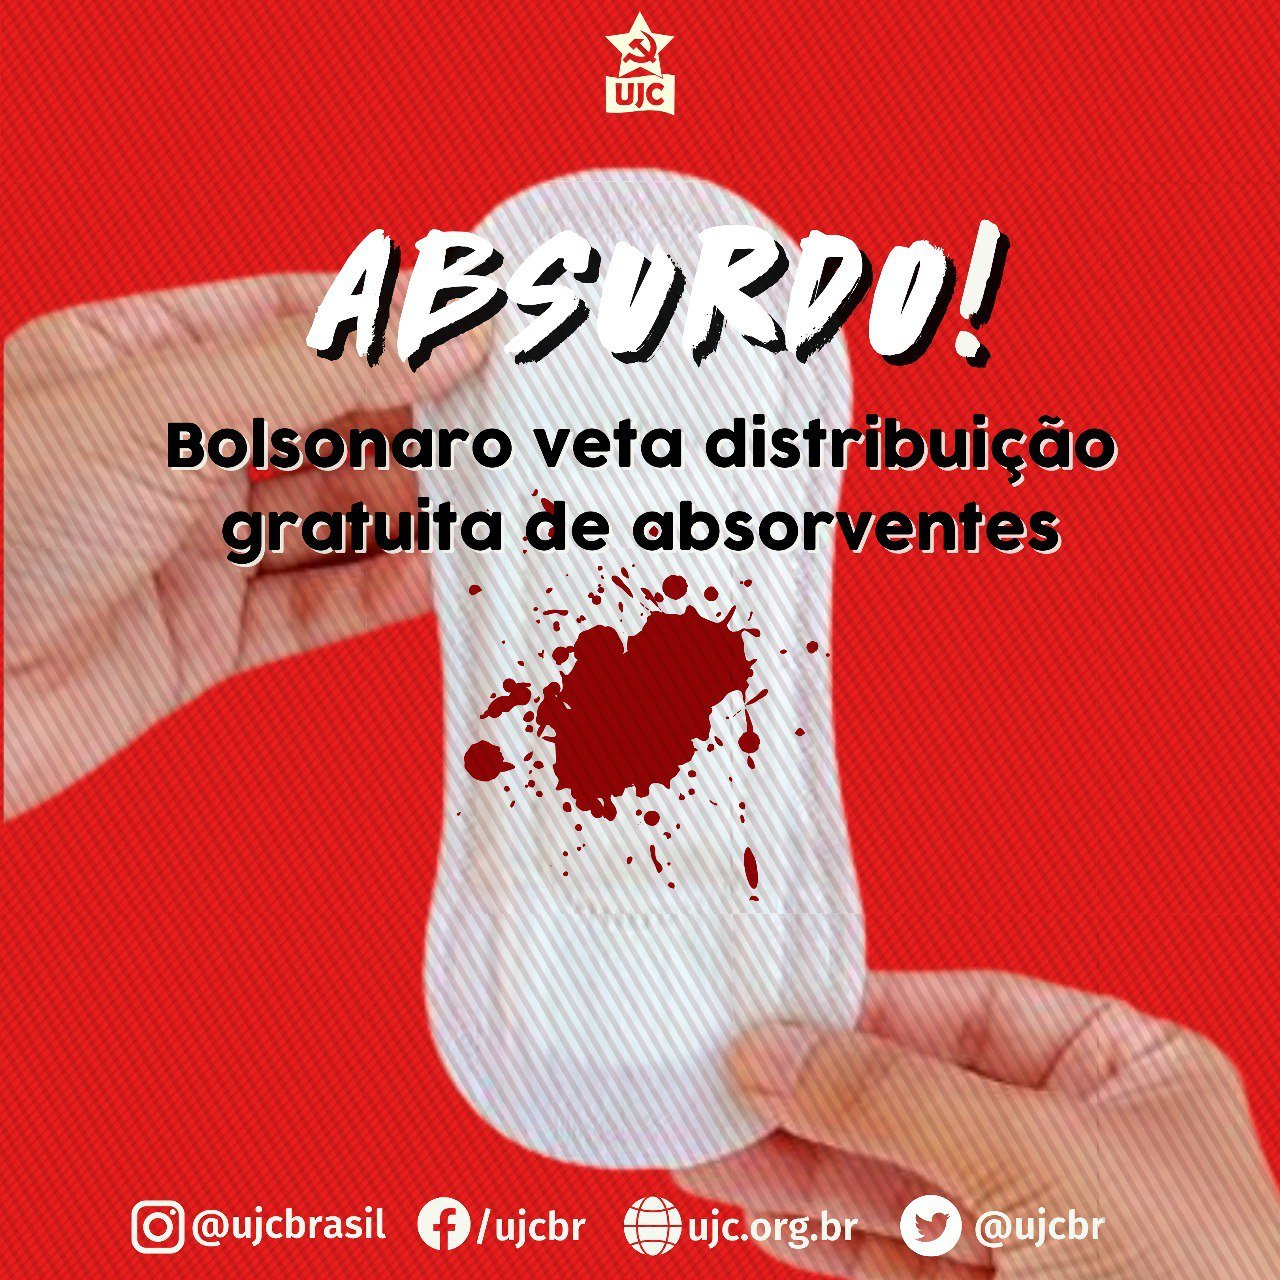 ABSURDO! Bolsonaro veta distribuição gratuita de absorventes!